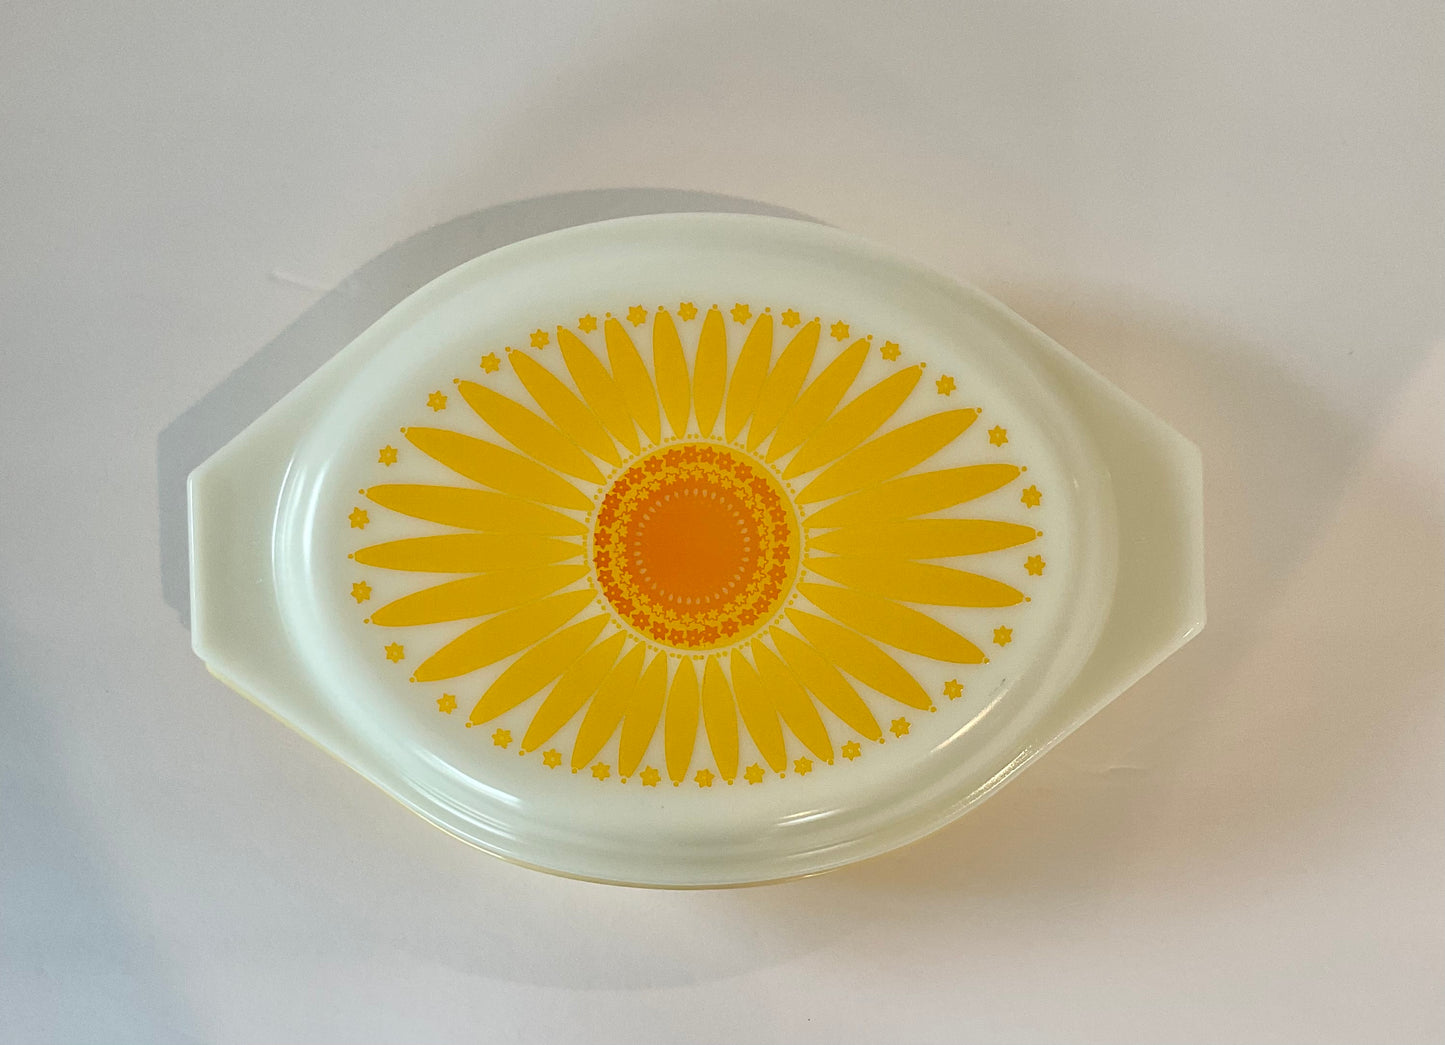 Vintage Pyrex Sunflower Lid Divided Casserole Dish, 1 1/2 Qt